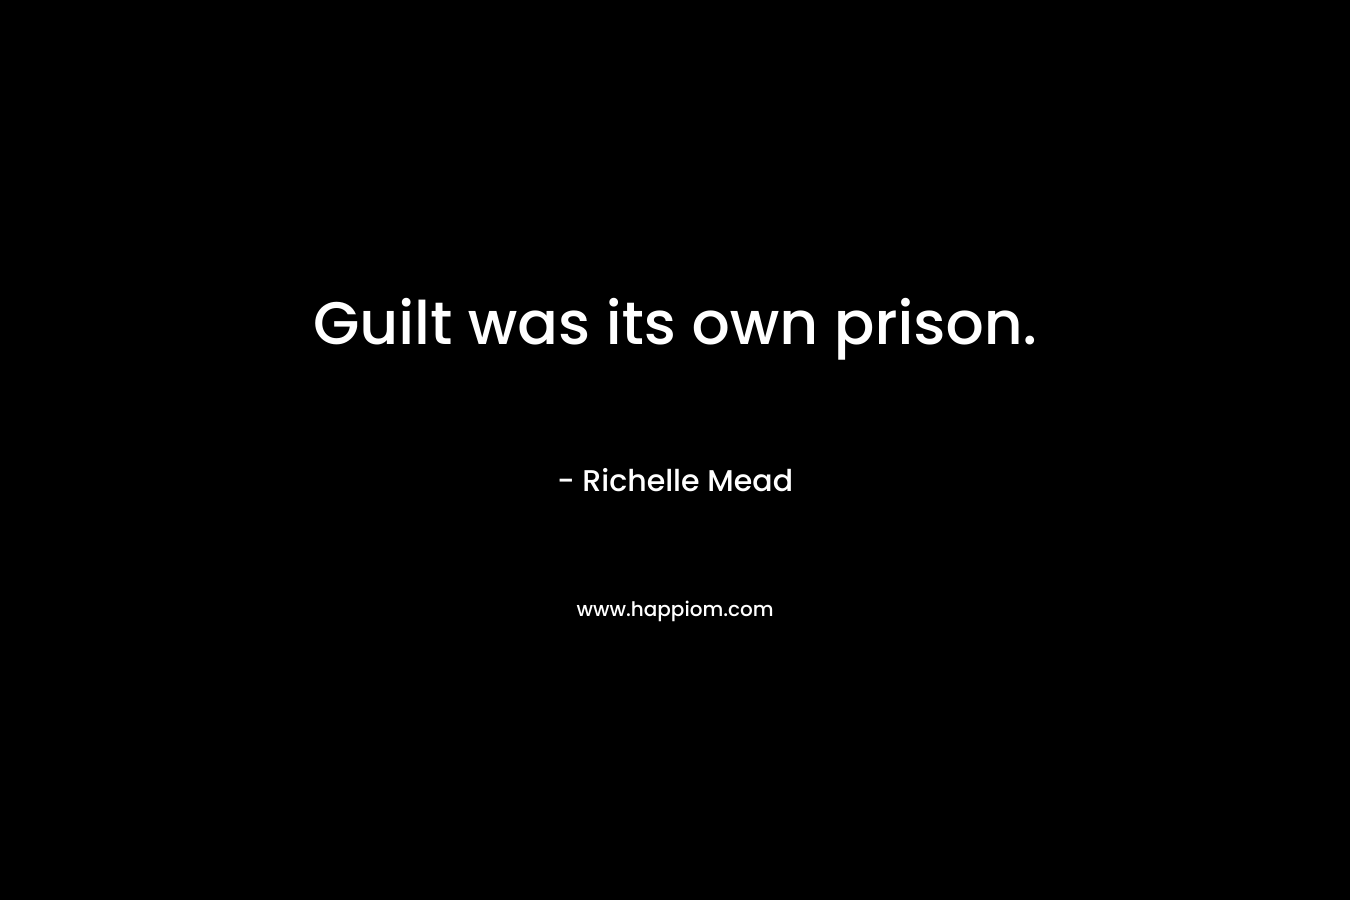 Guilt was its own prison. – Richelle Mead